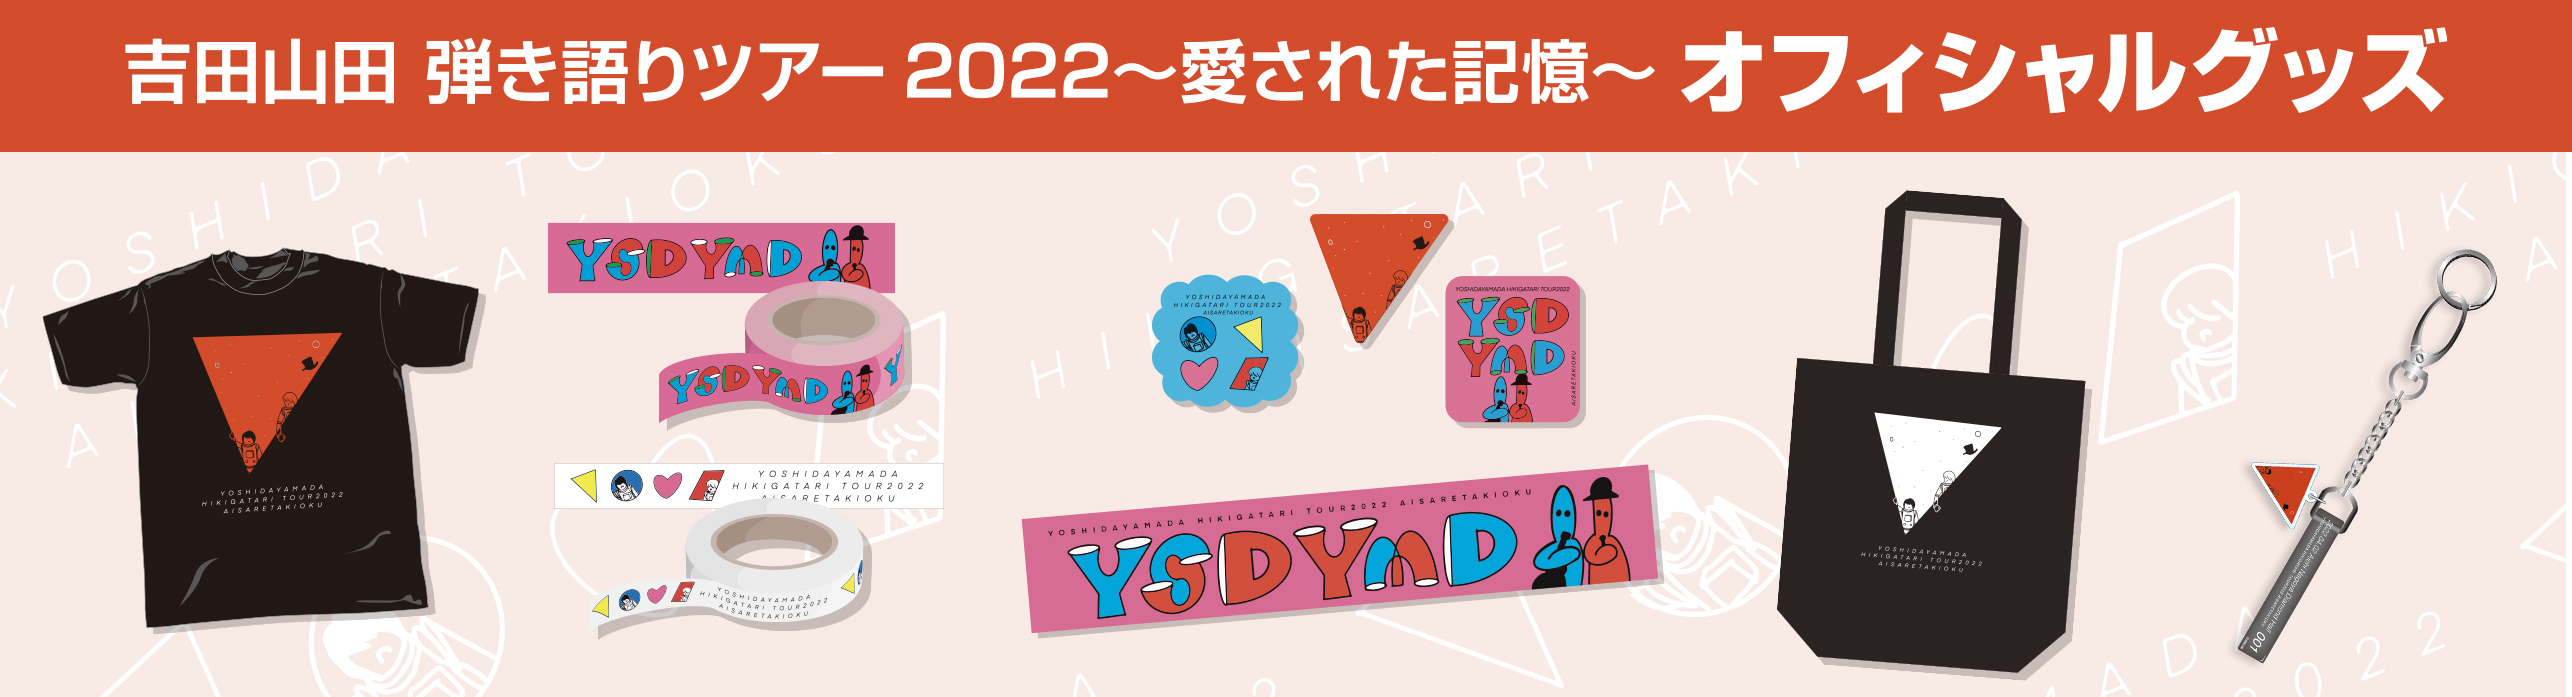 吉田山田 弾き語りツアー2022〜愛された記憶〜